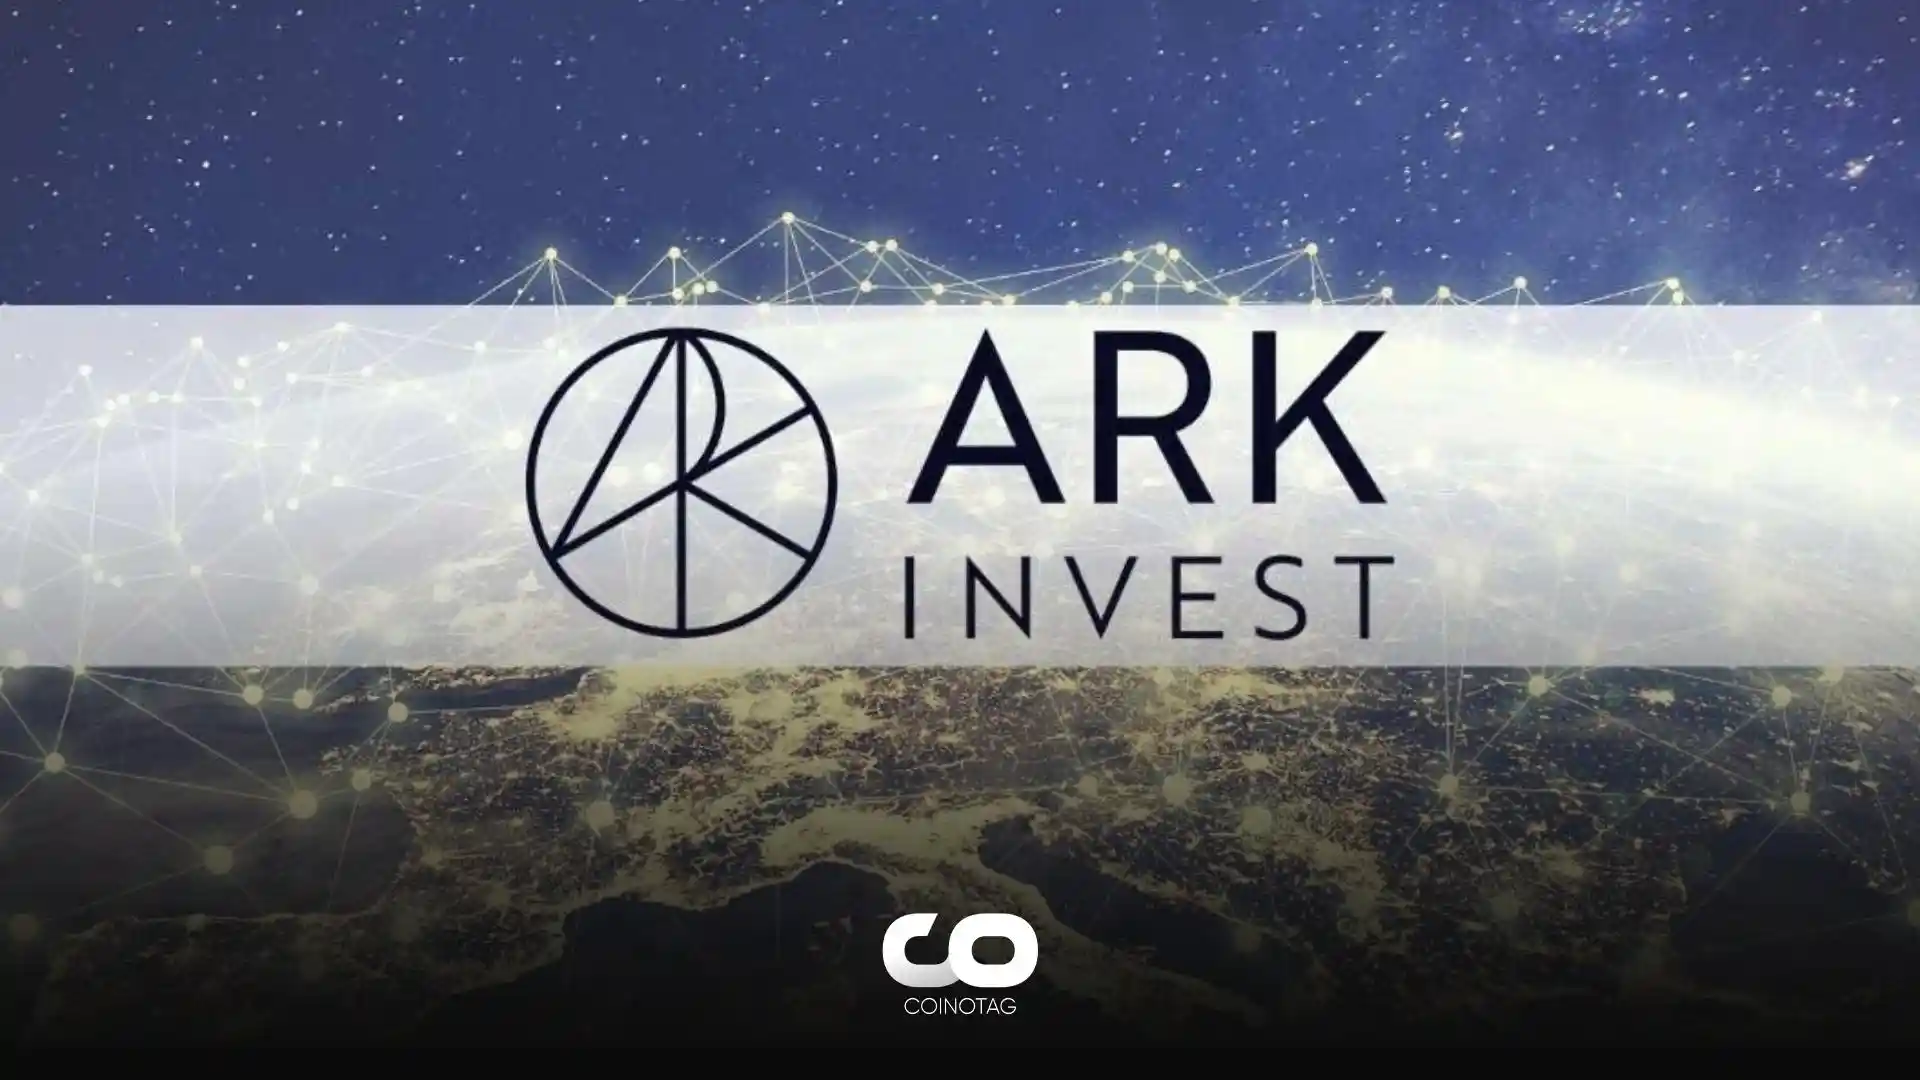 ark-invest